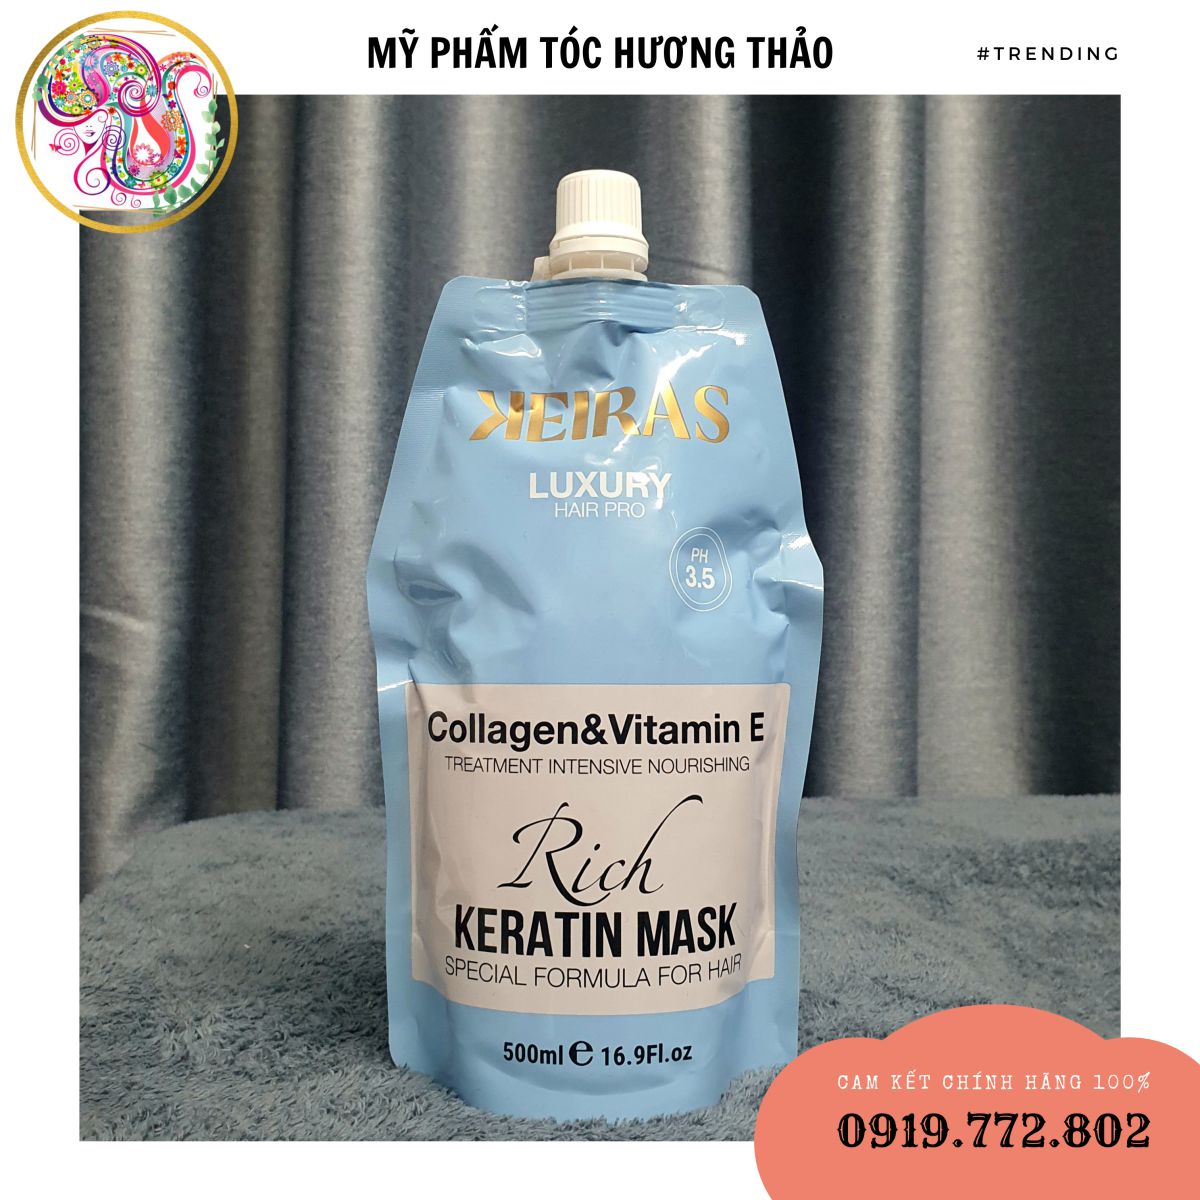 DẦU HẤP Ủ KEIRAS Collagen&Vitamin E Rich Keratin Mask - PHỤC HỒI TÓC HƯ TỔN